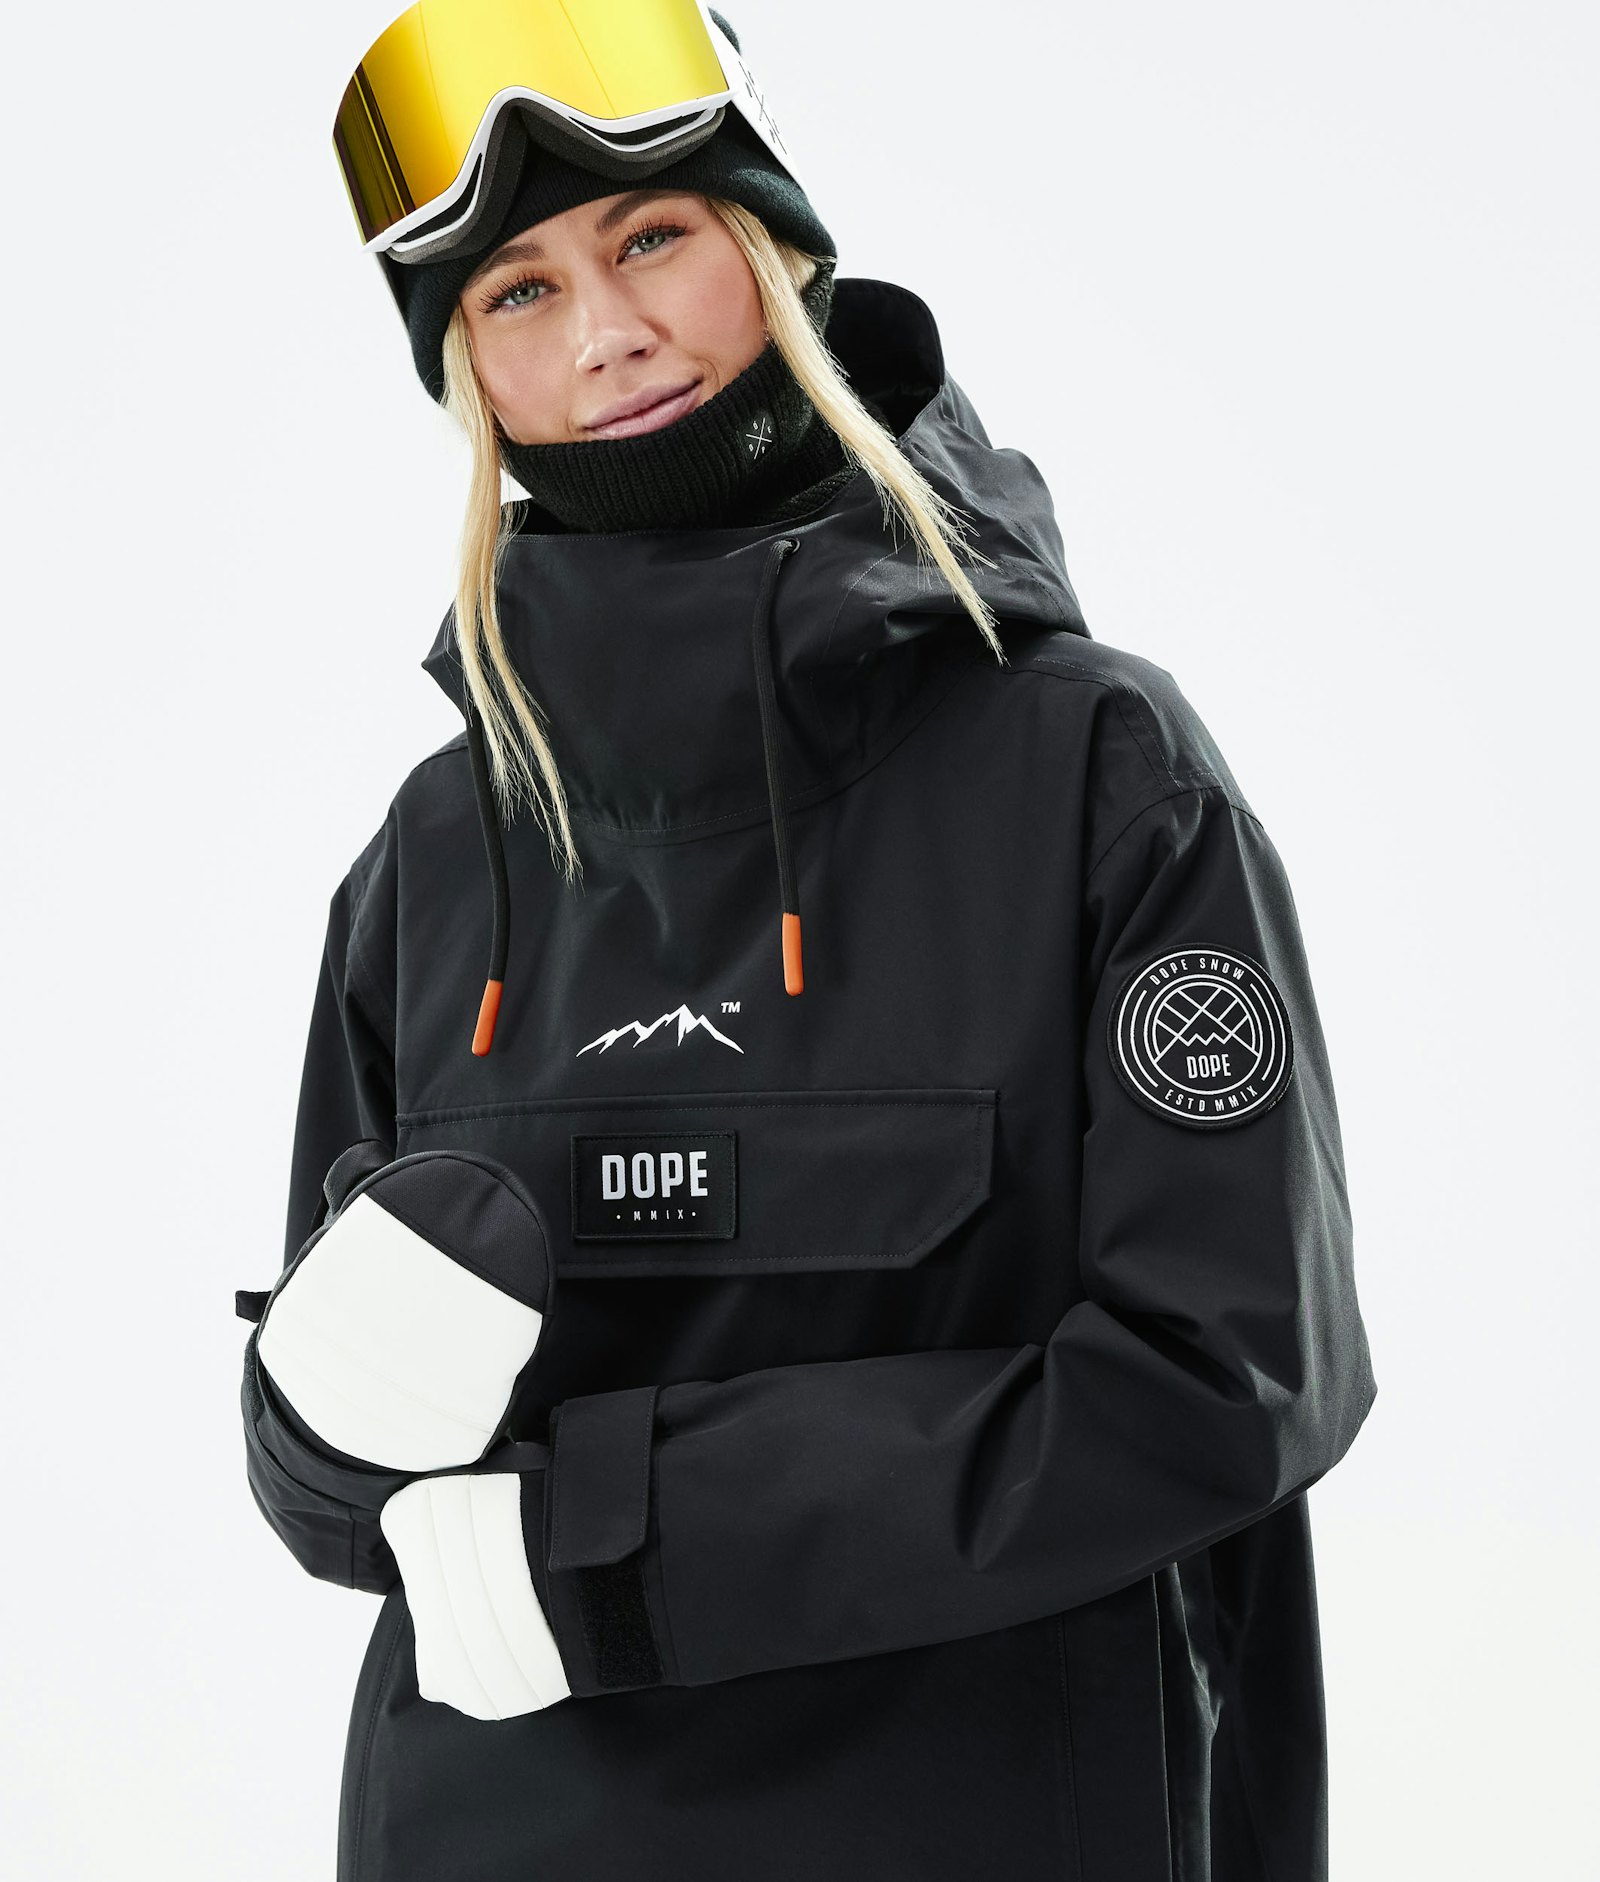 Dope Blizzard W 2021 Ski Jacket Women Black